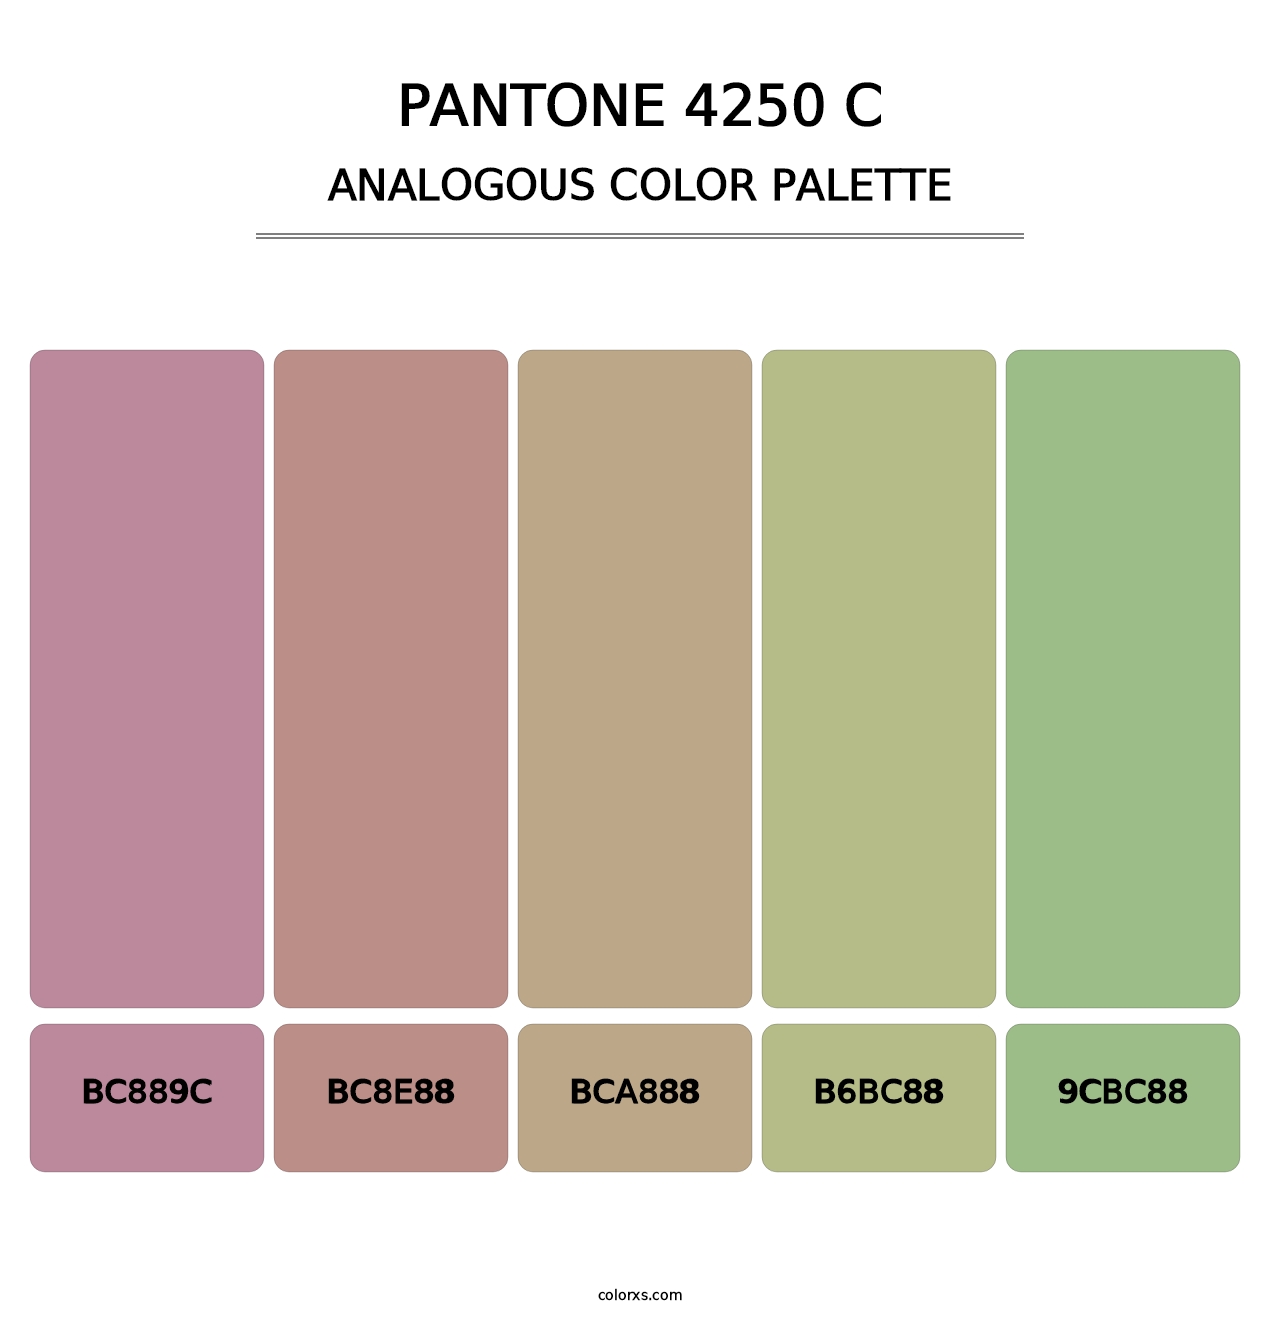 PANTONE 4250 C - Analogous Color Palette